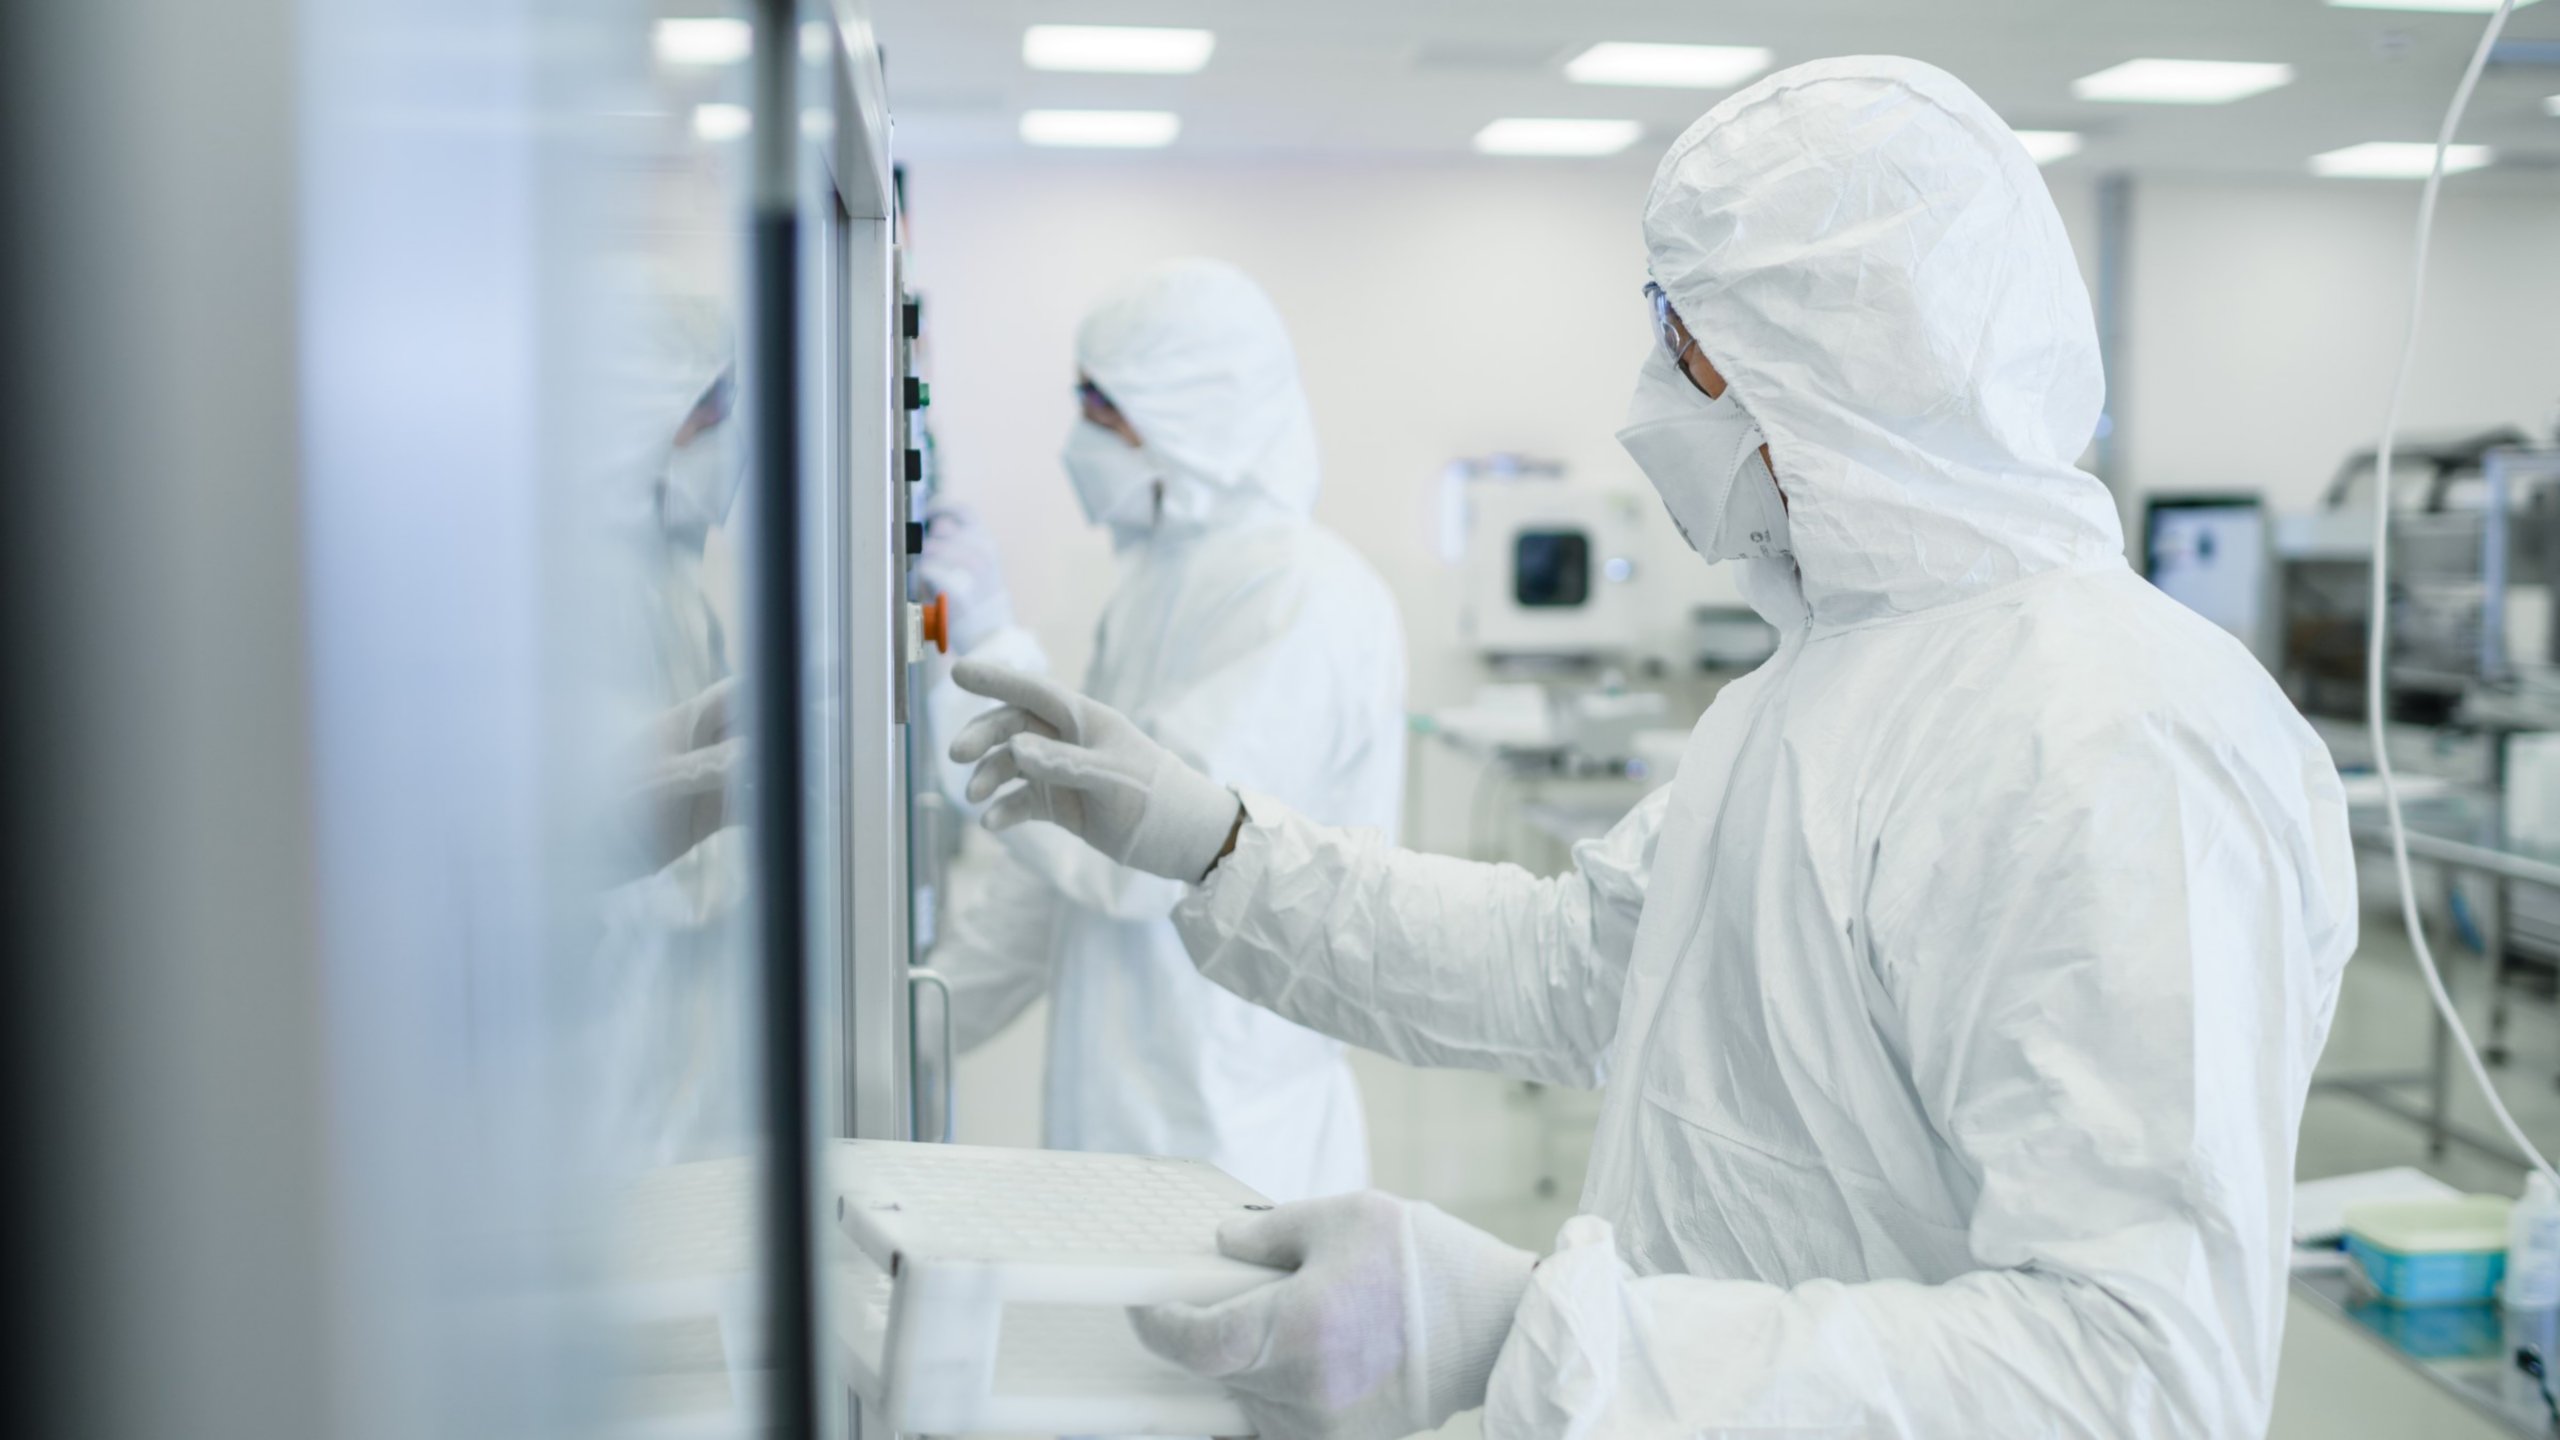 Um profissional de ciências da vida usando macacão, máscara e óculos de segurança examina uma linha de produção farmacêutica automatizada dentro de uma fábrica.